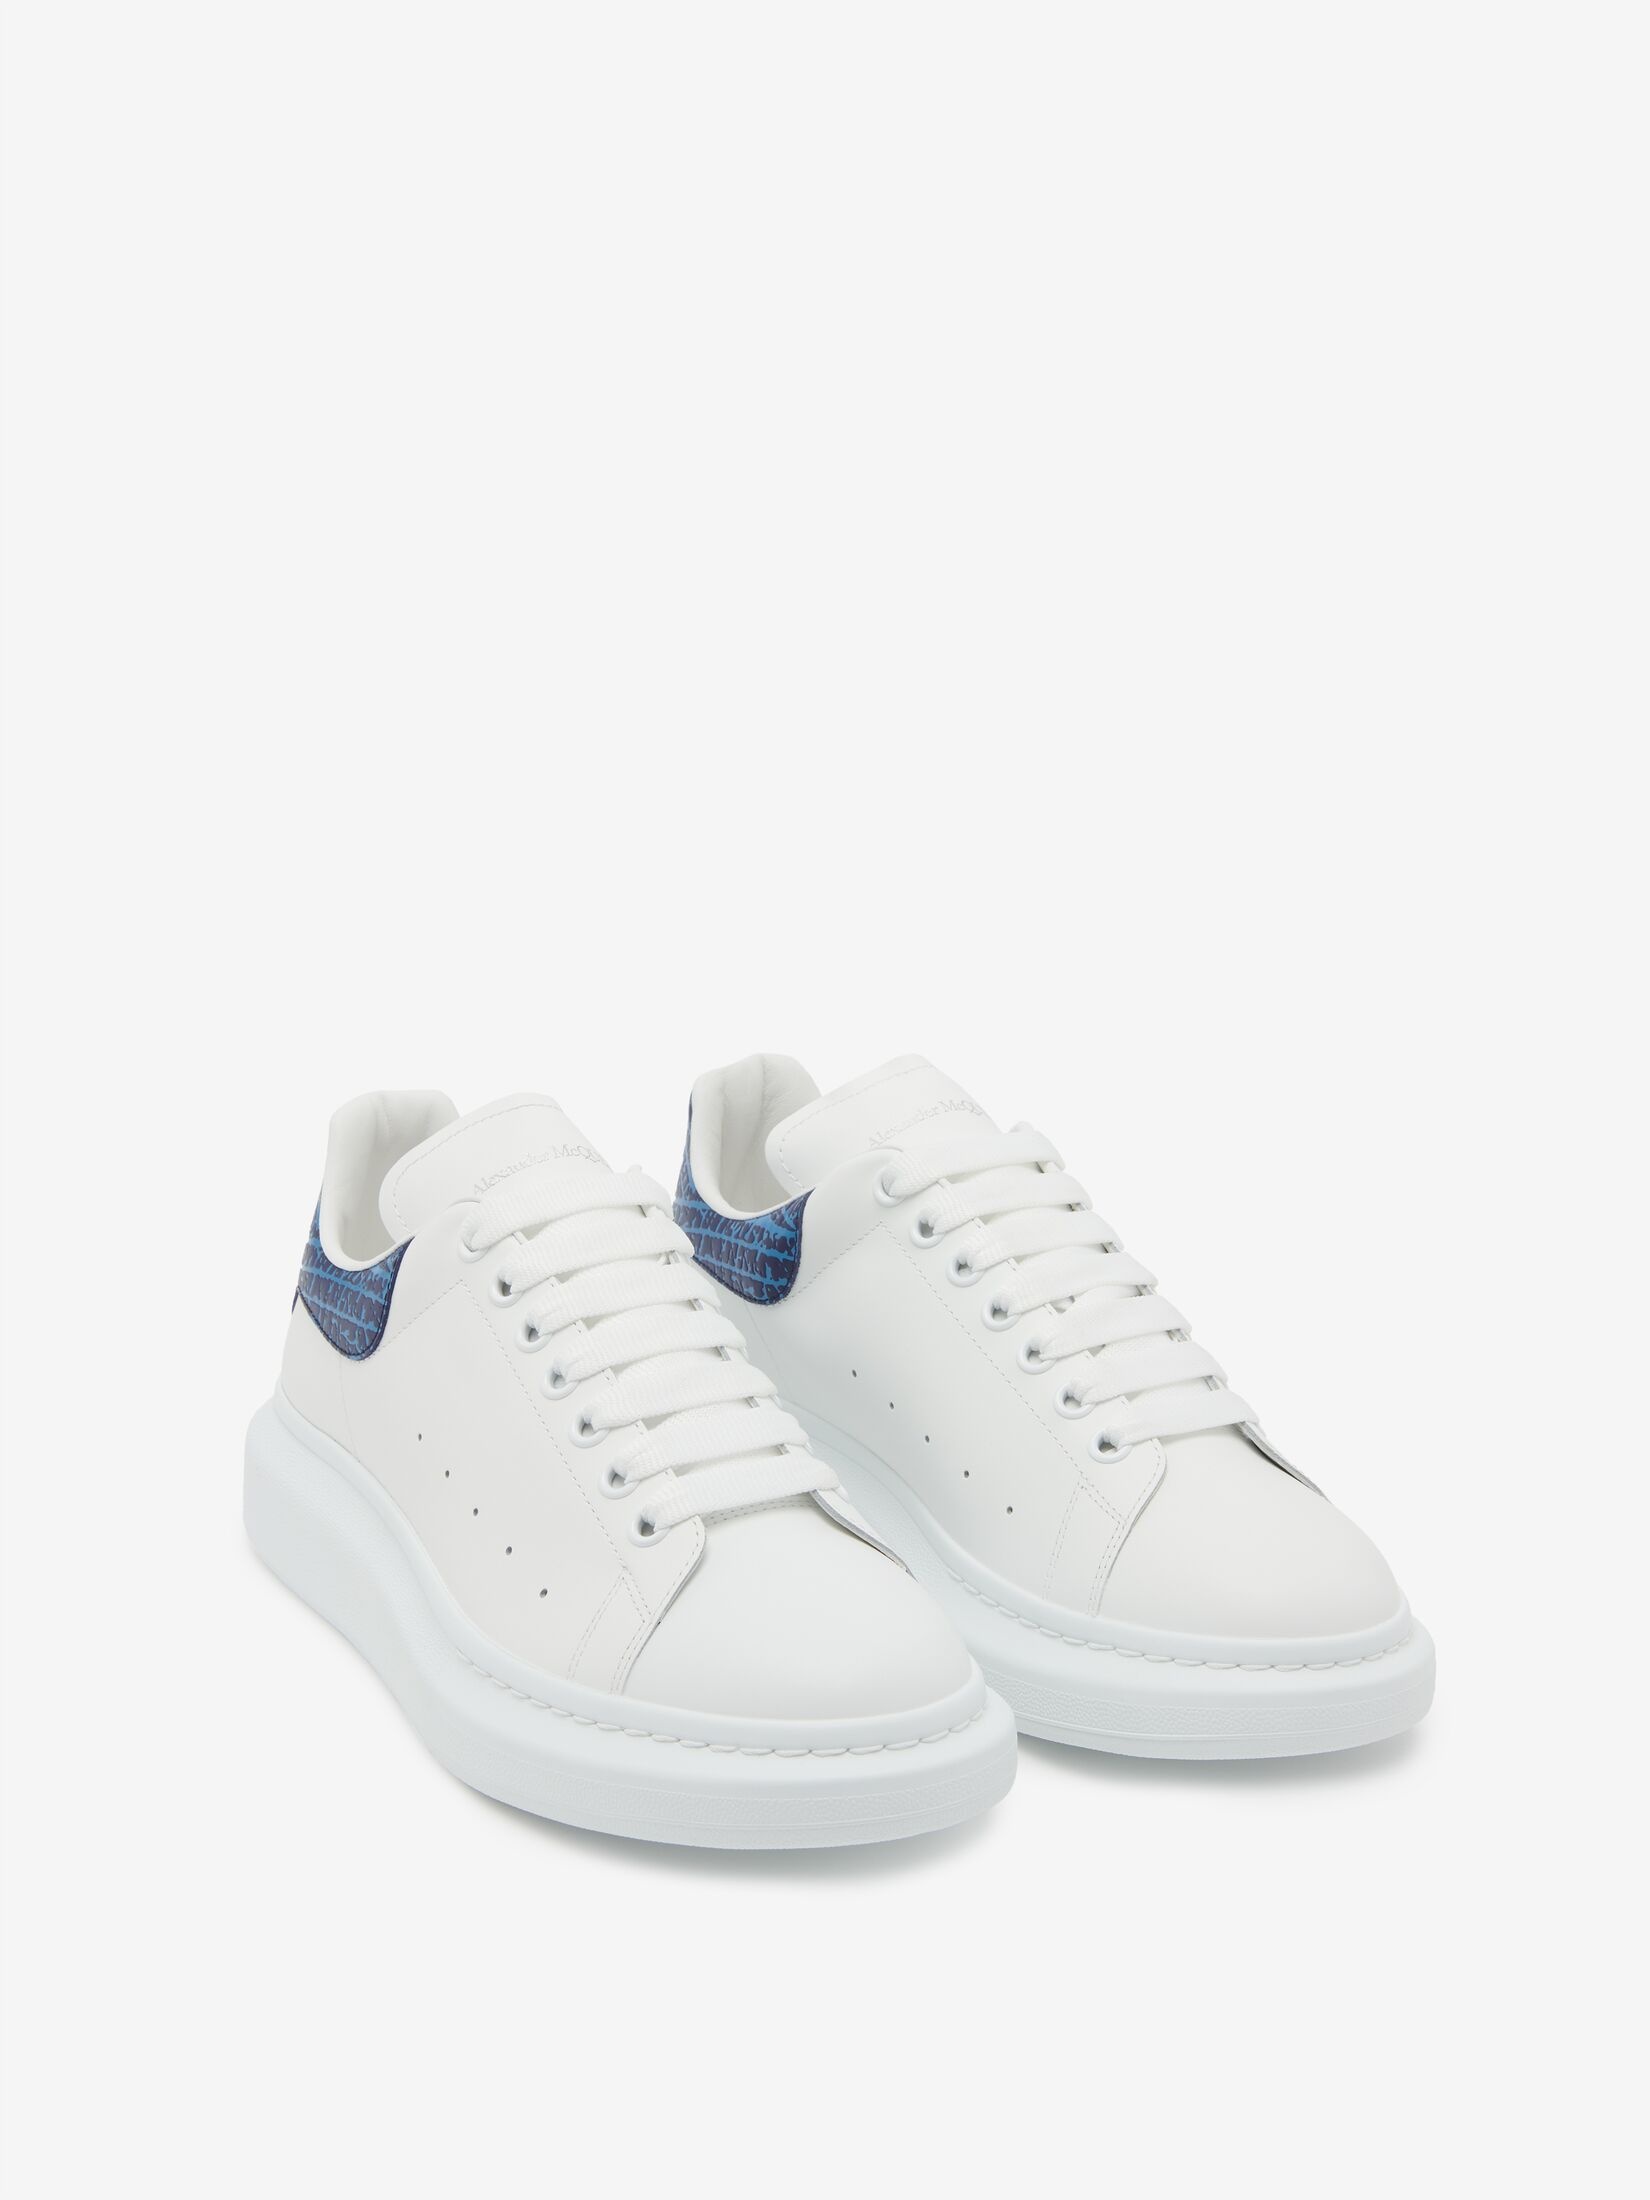 Men's Oversized Sneaker in White/lapis Blue - 2